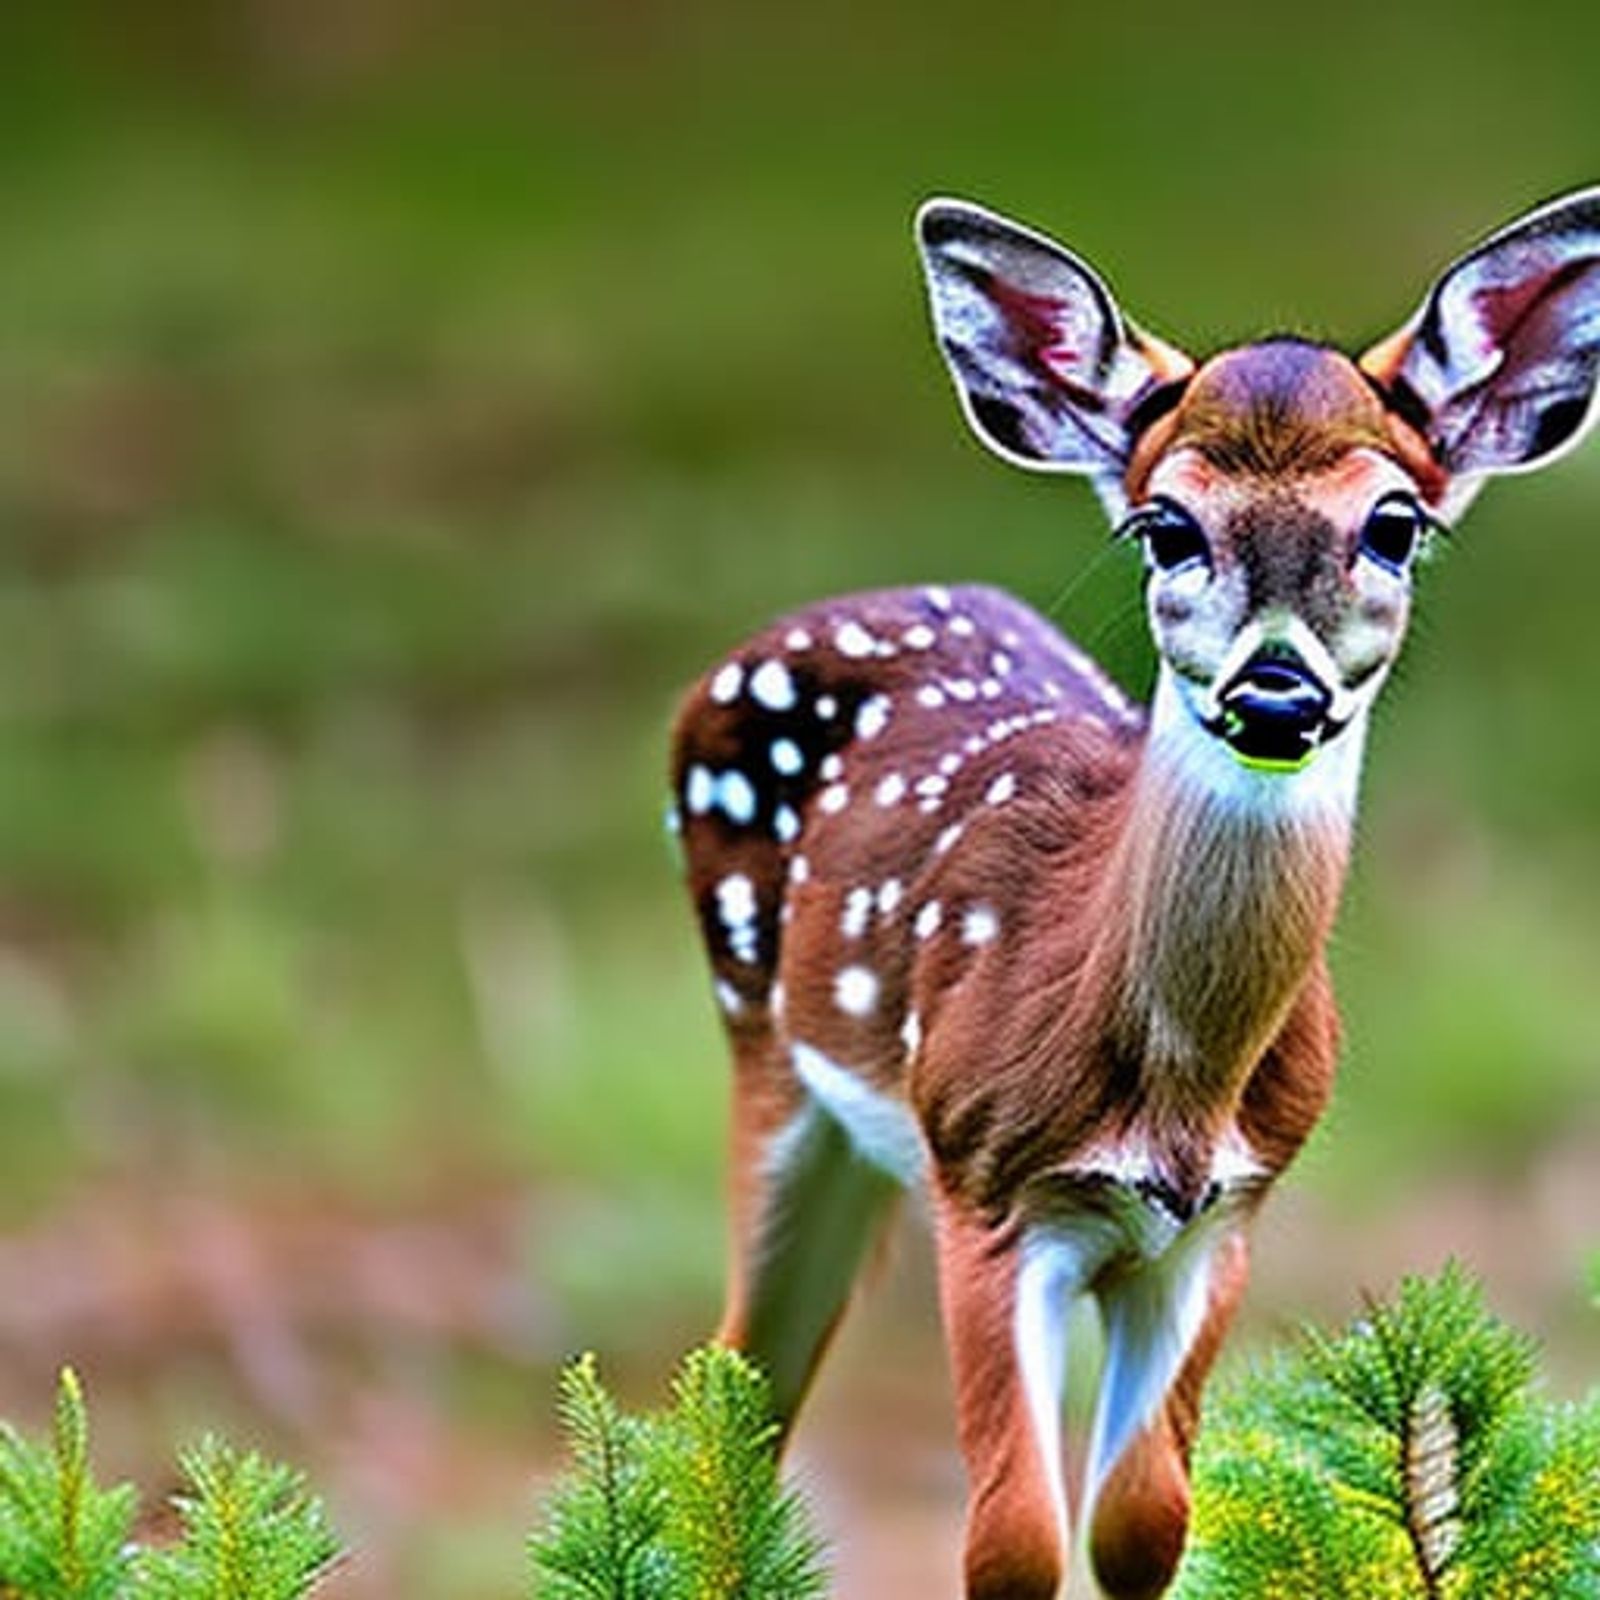 cute baby deer